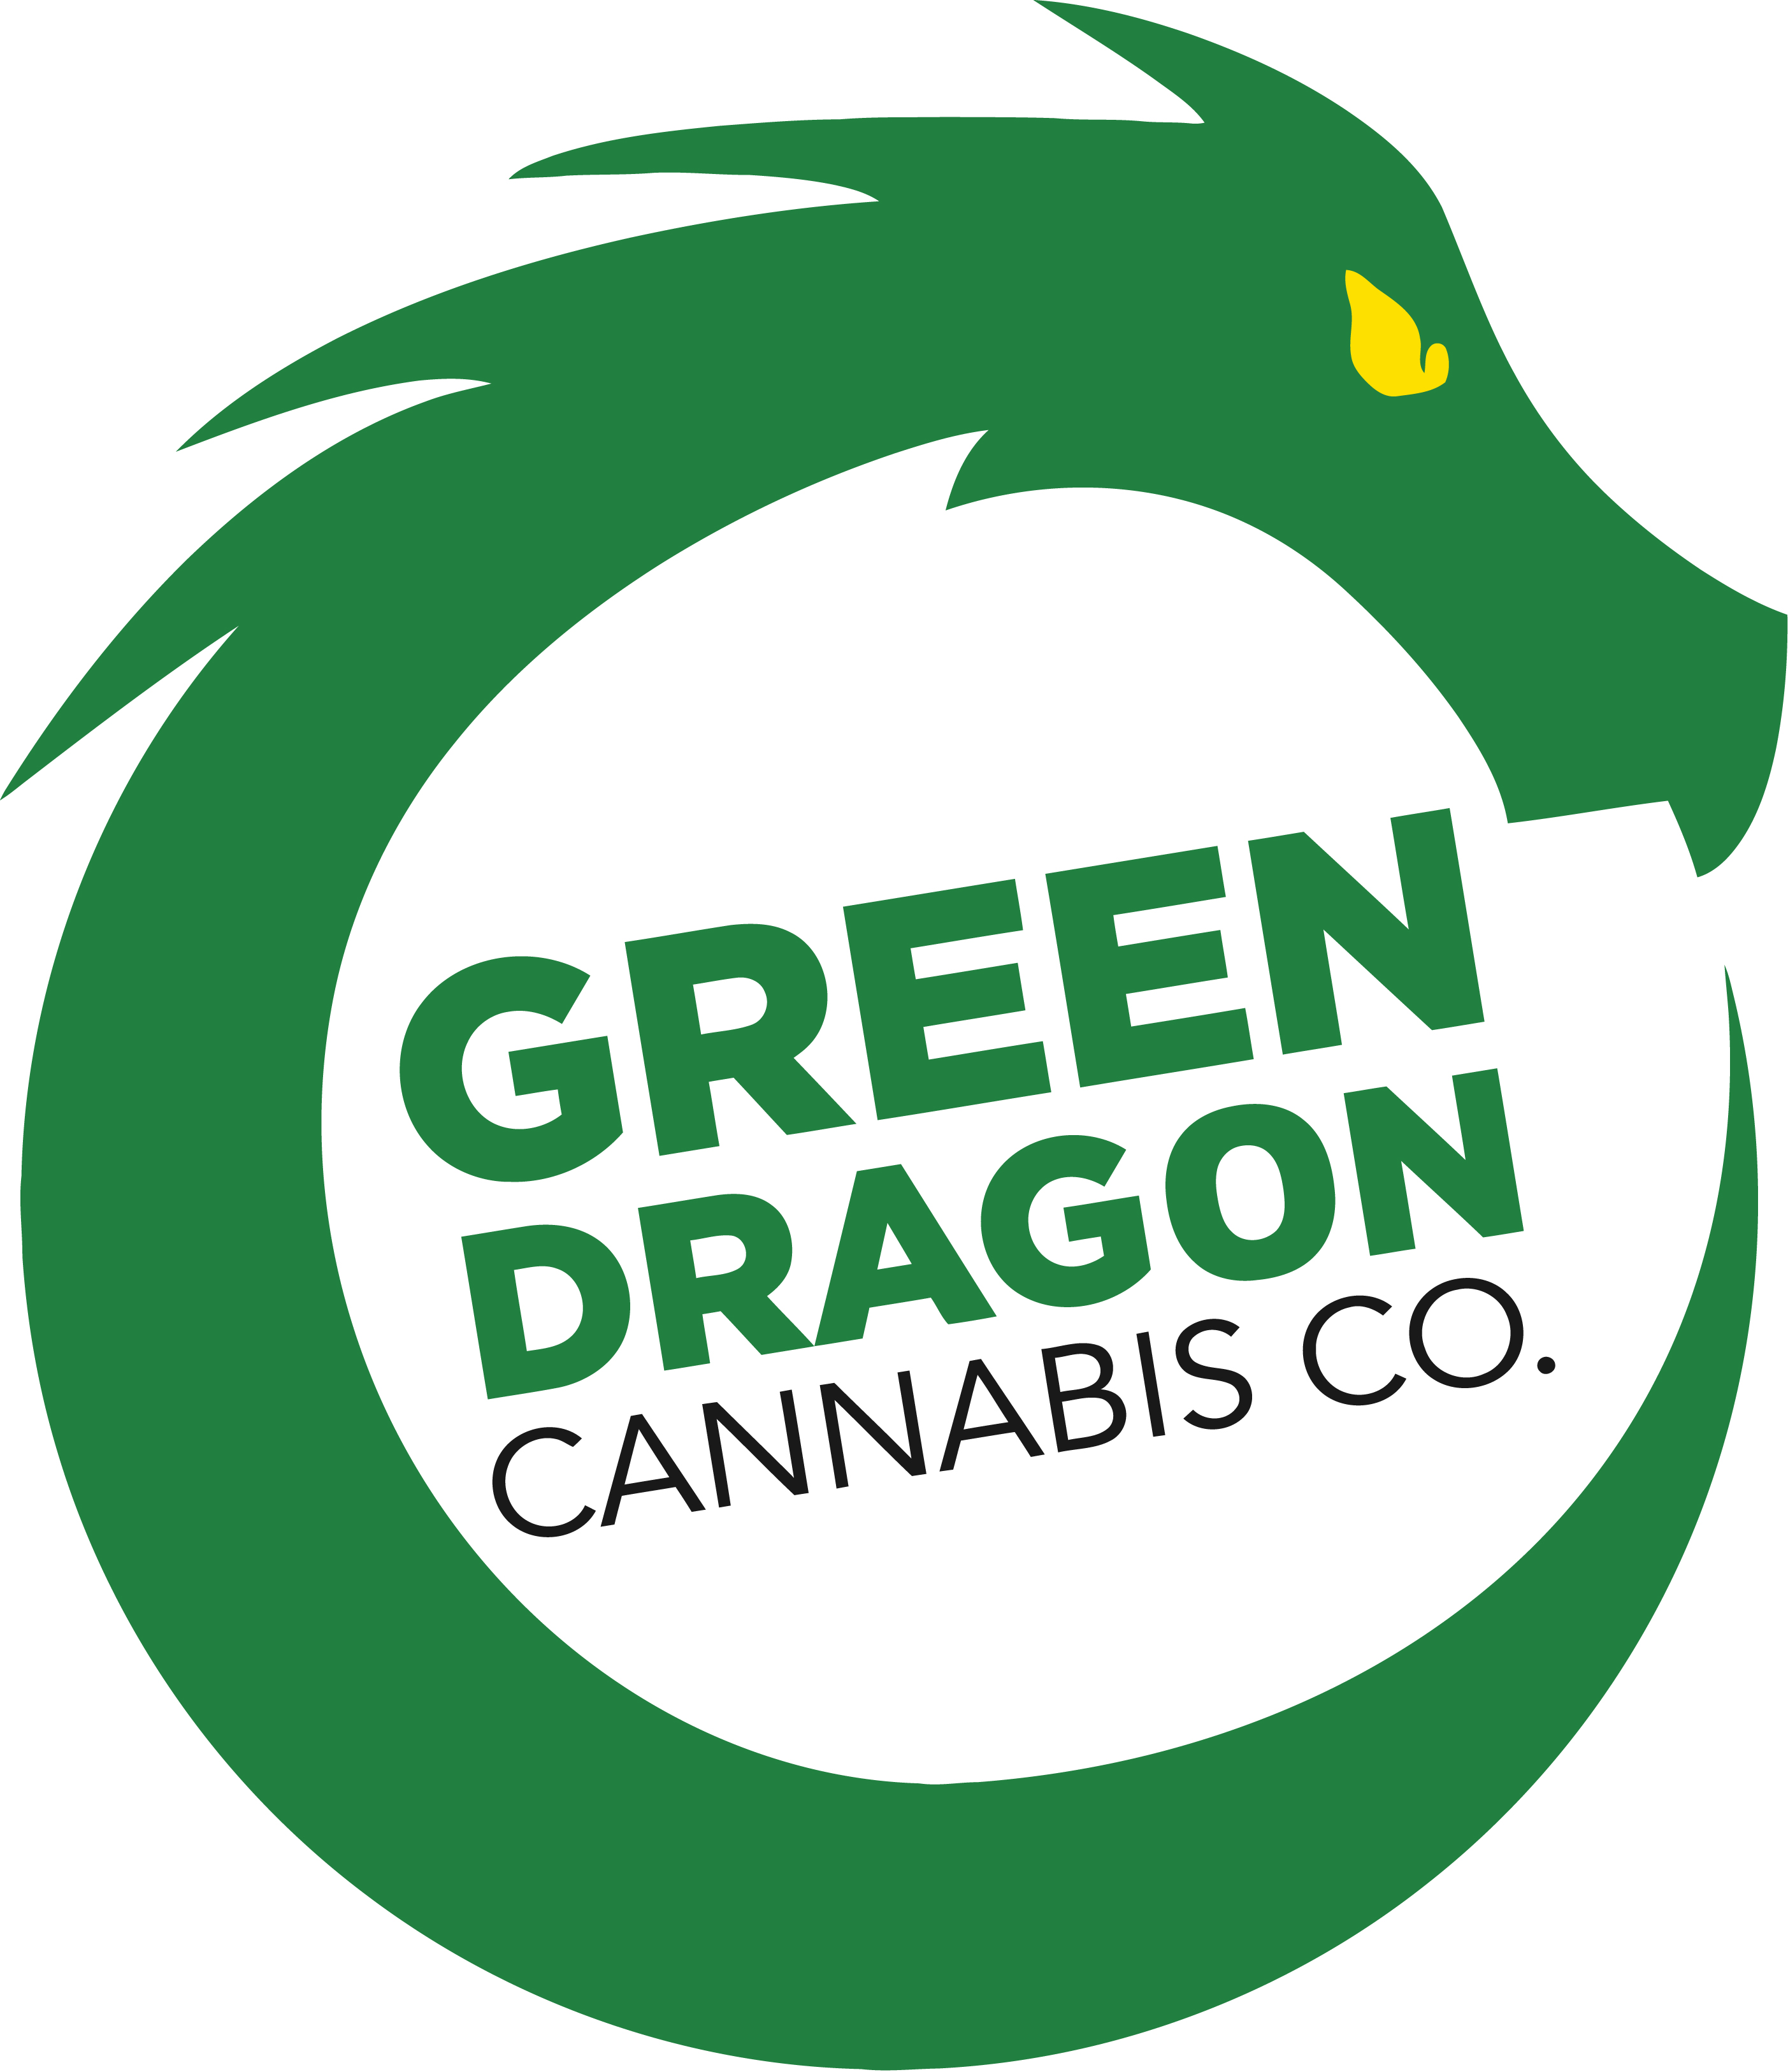 Green Dragon Cannabis Co.